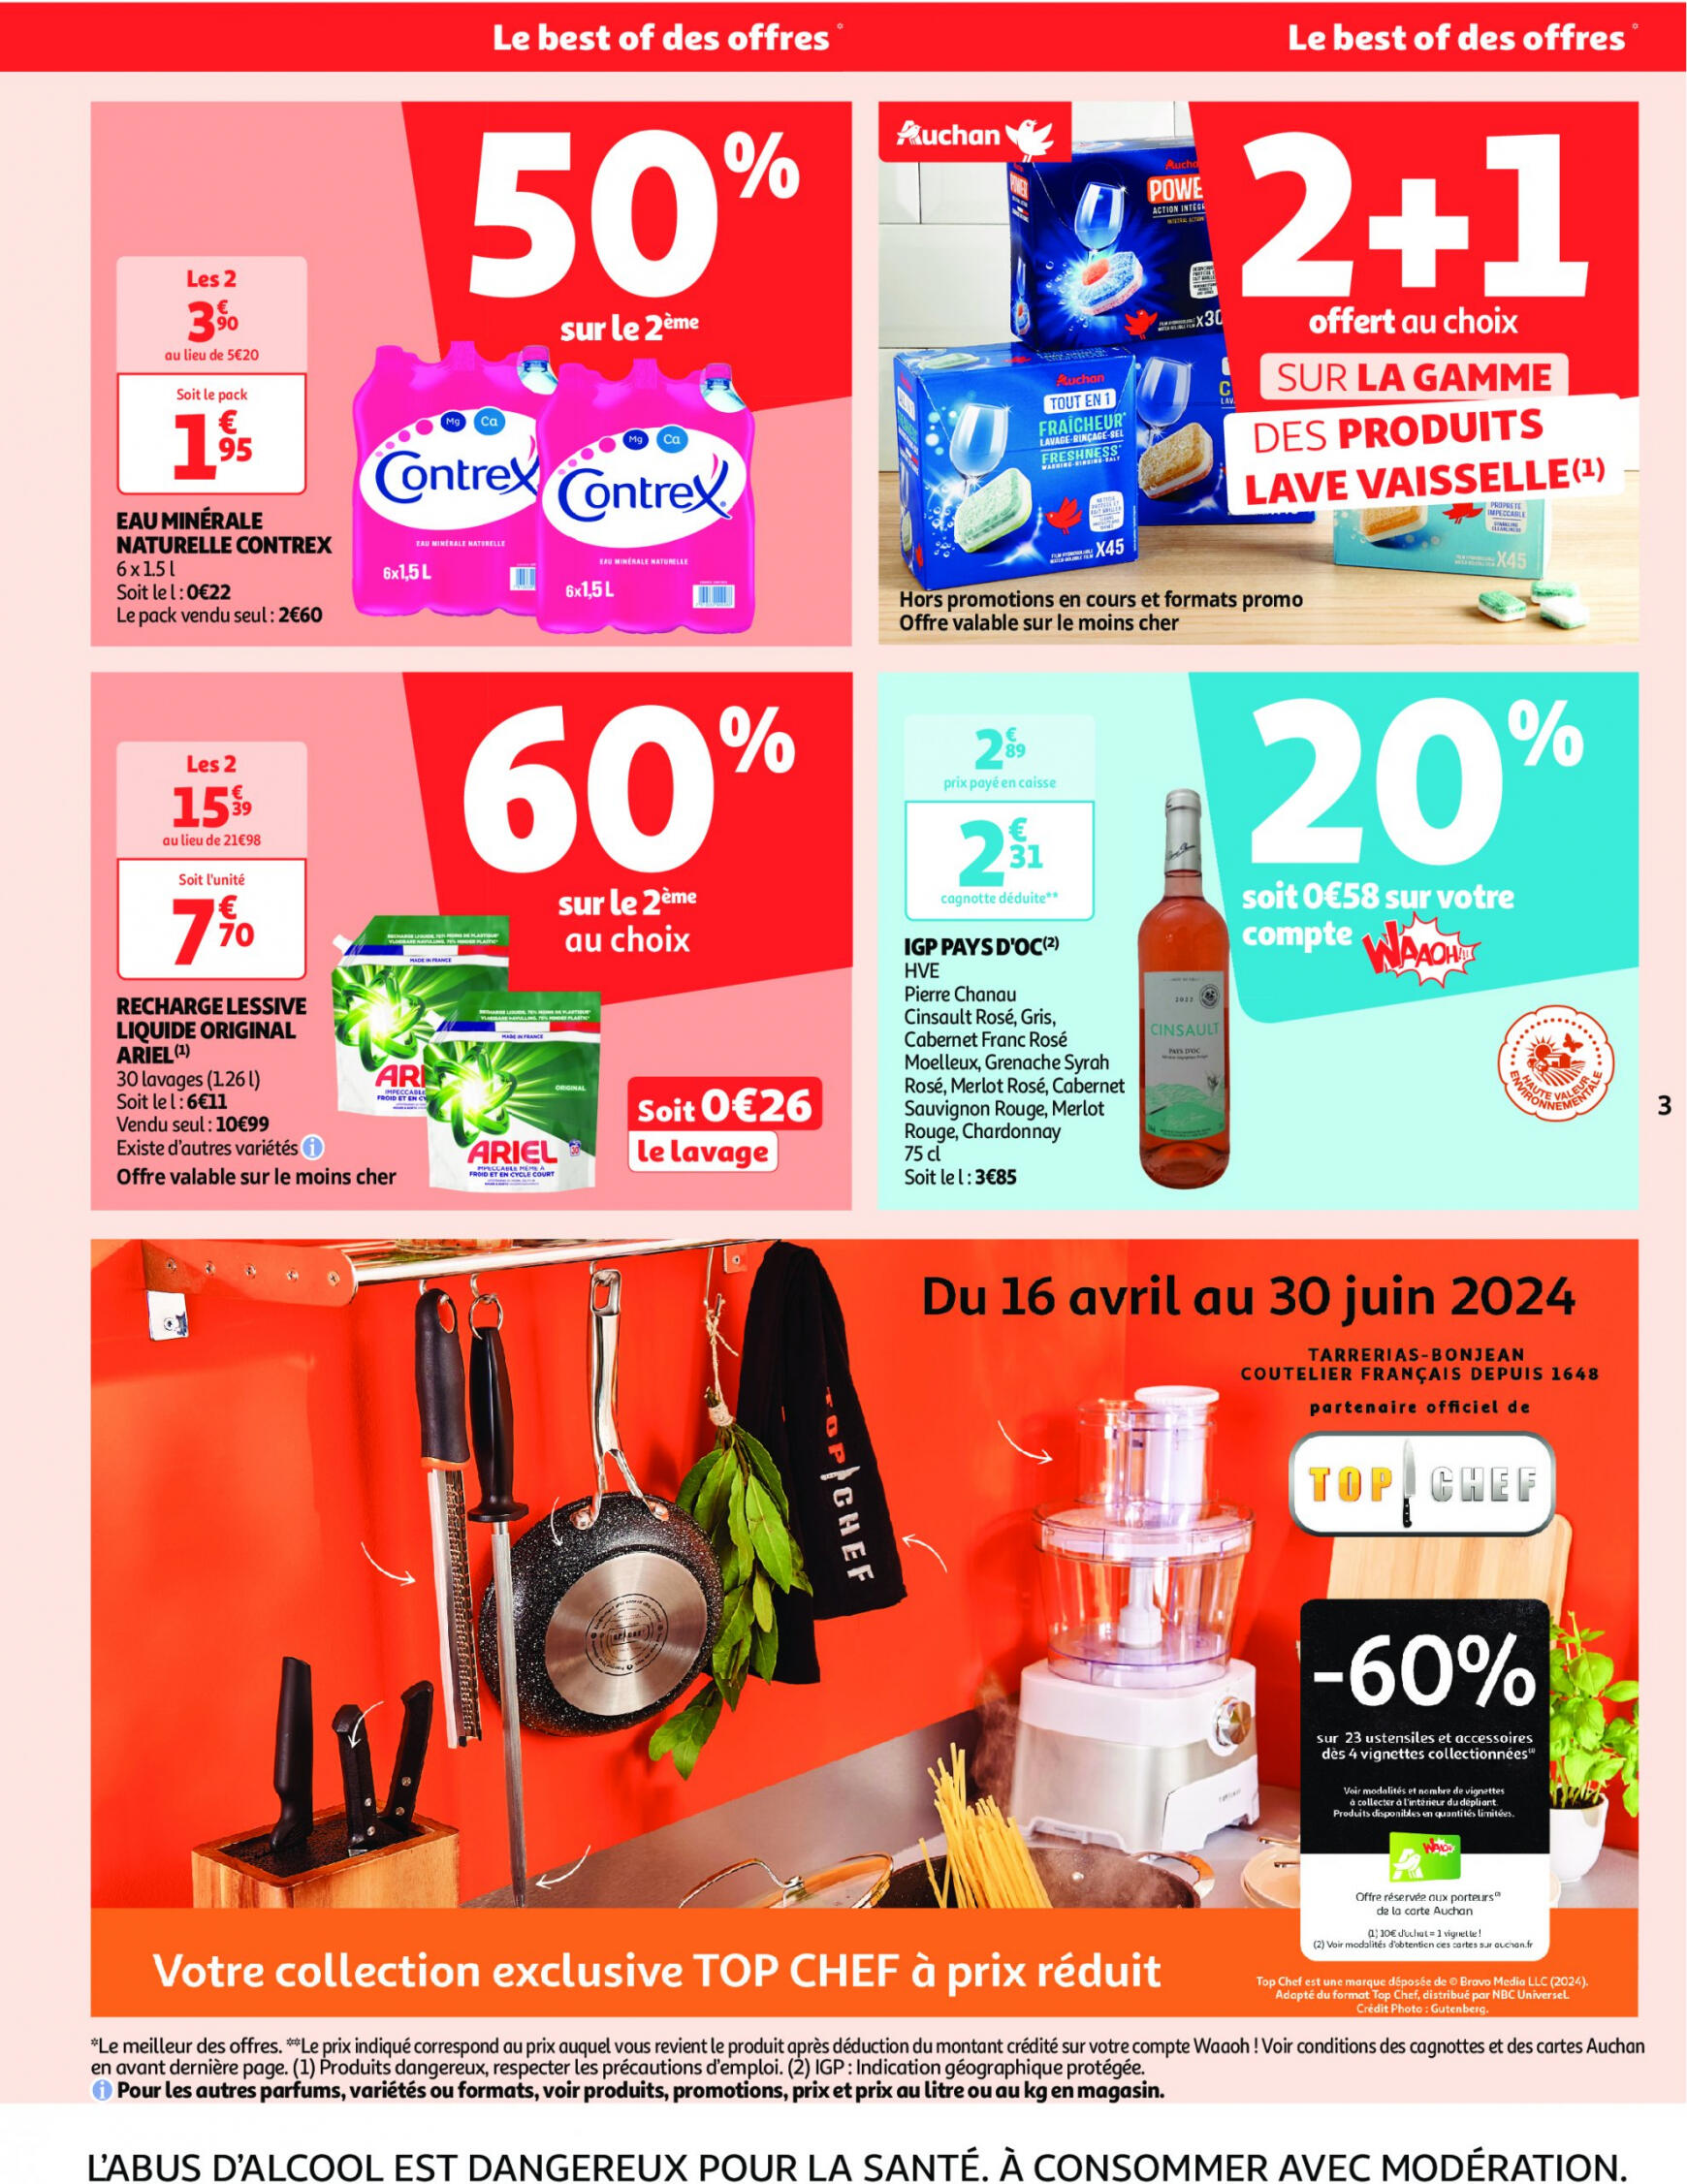 auchan - Auchan - On met le turbot sur les produits de la mer folder huidig 14.05. - 19.05. - page: 3